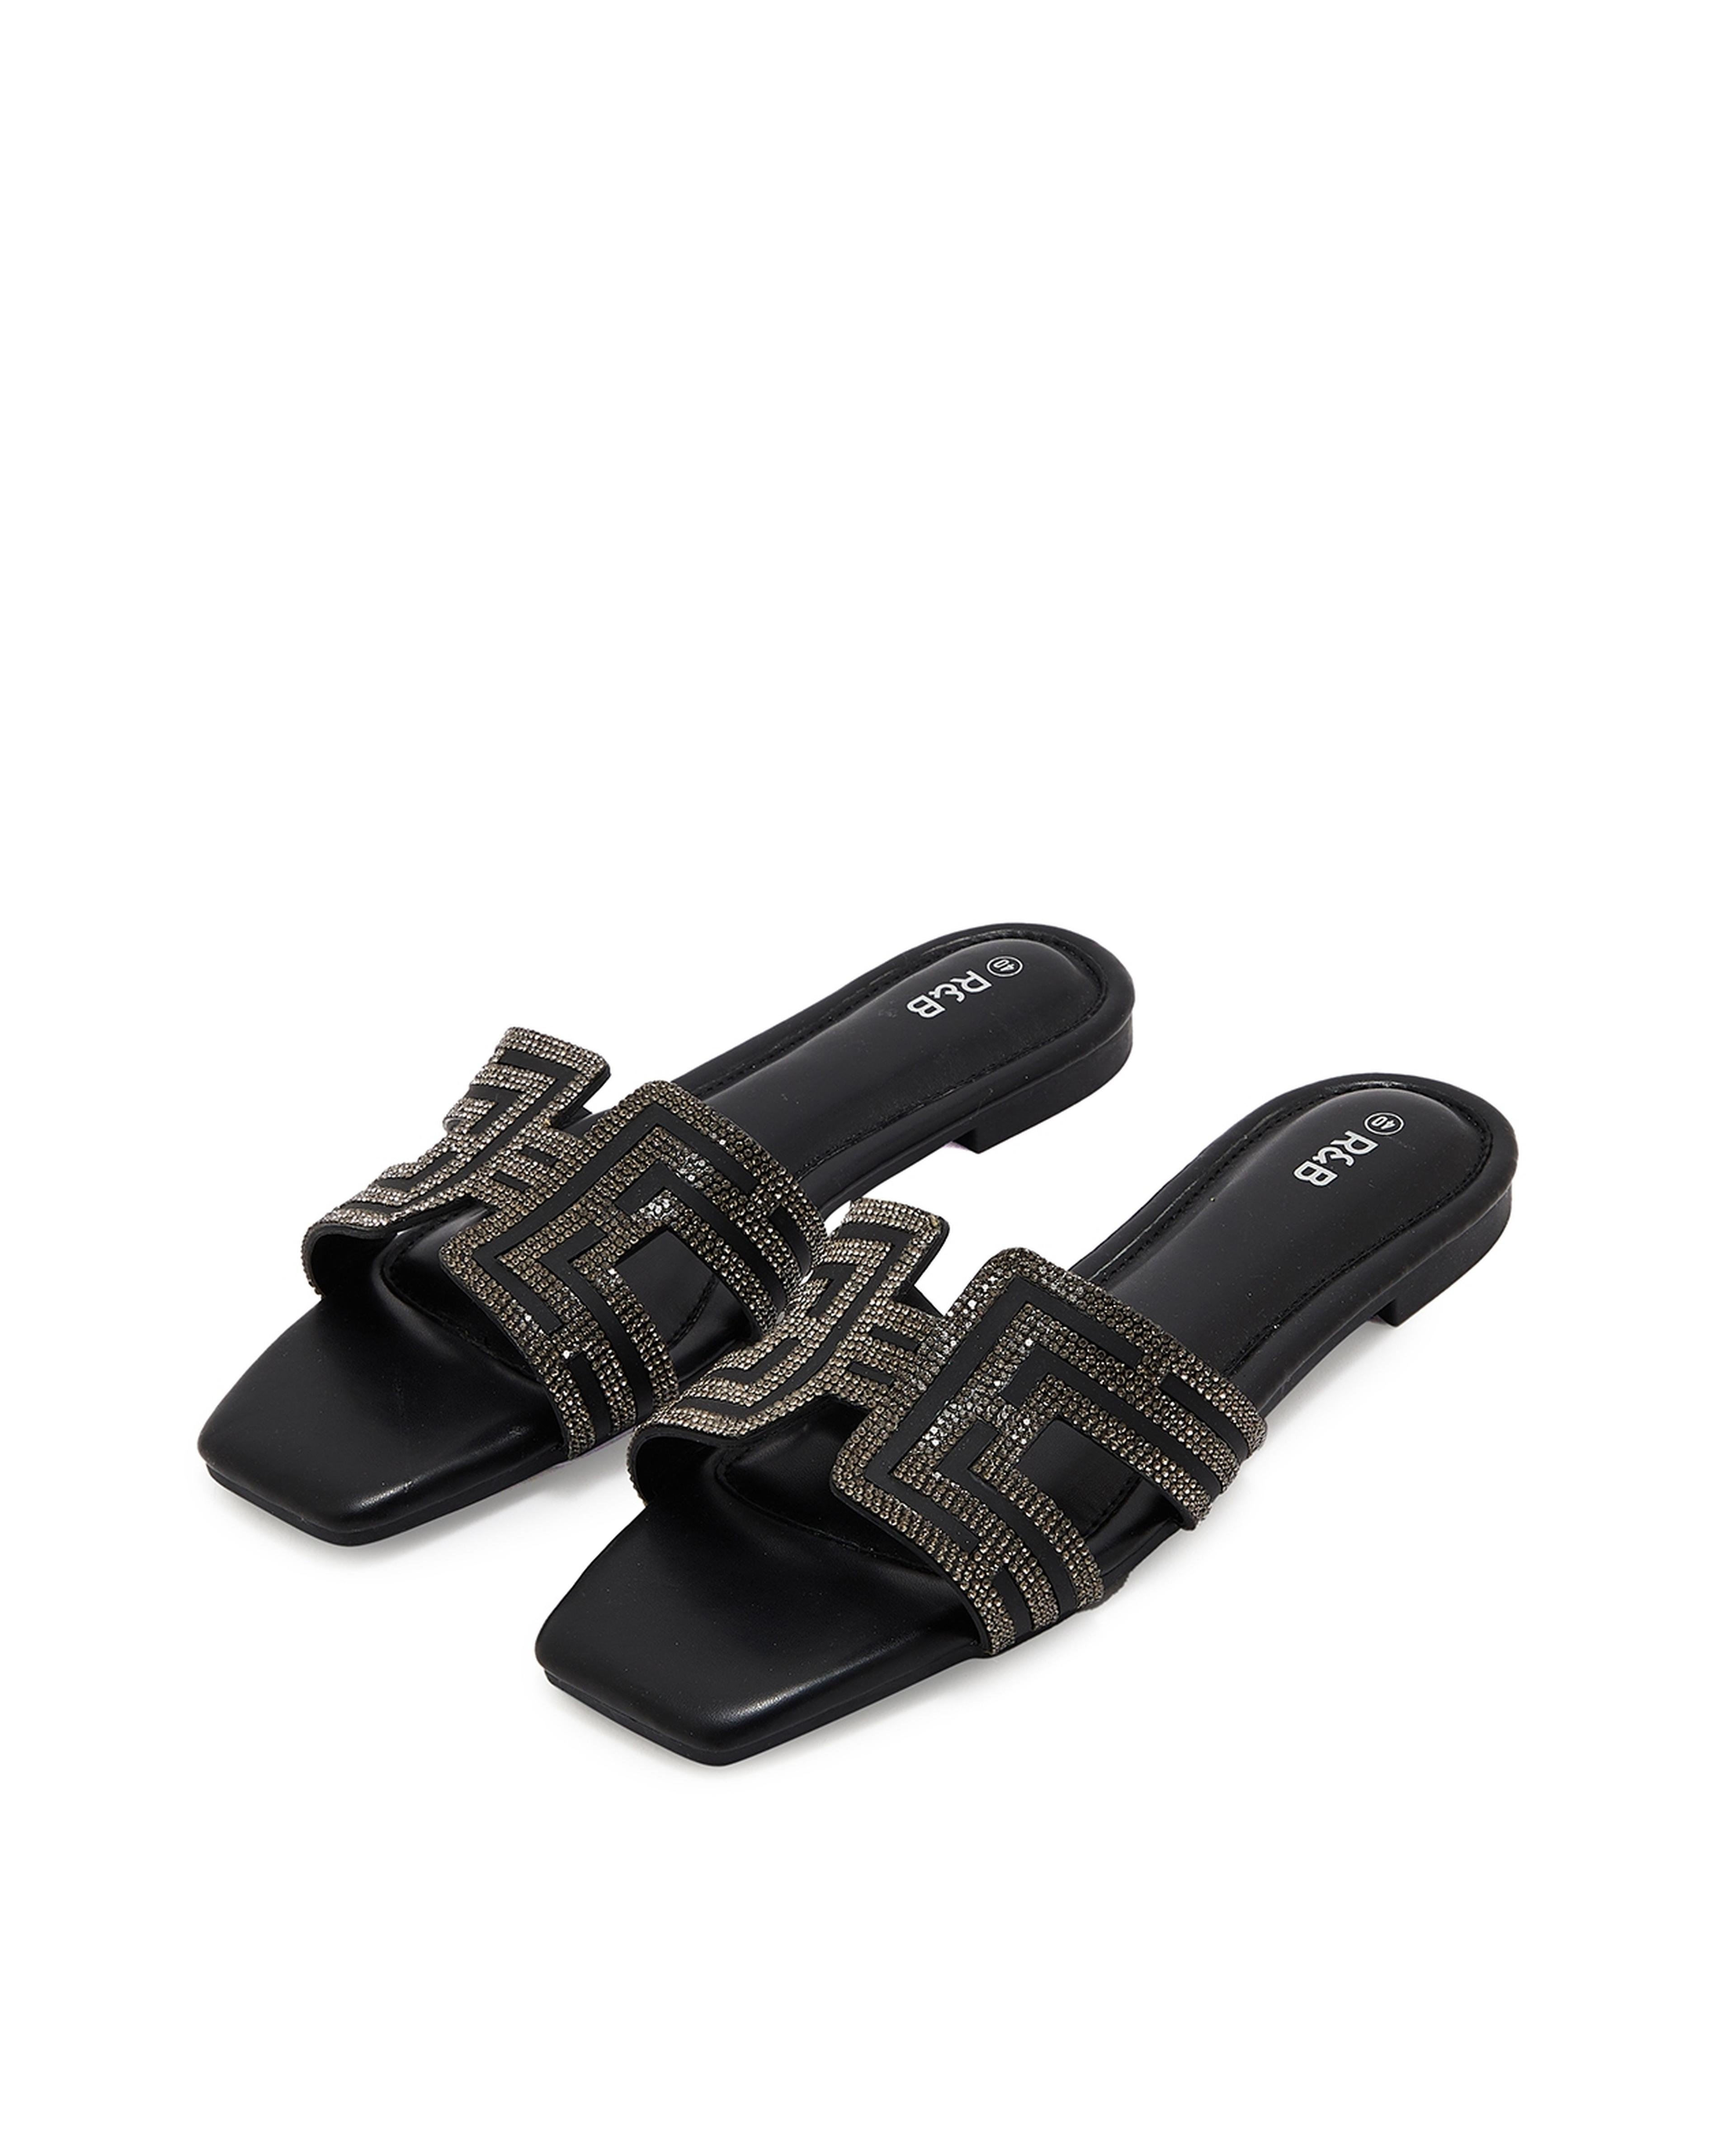 Embellished Open Toe Flat Sandals